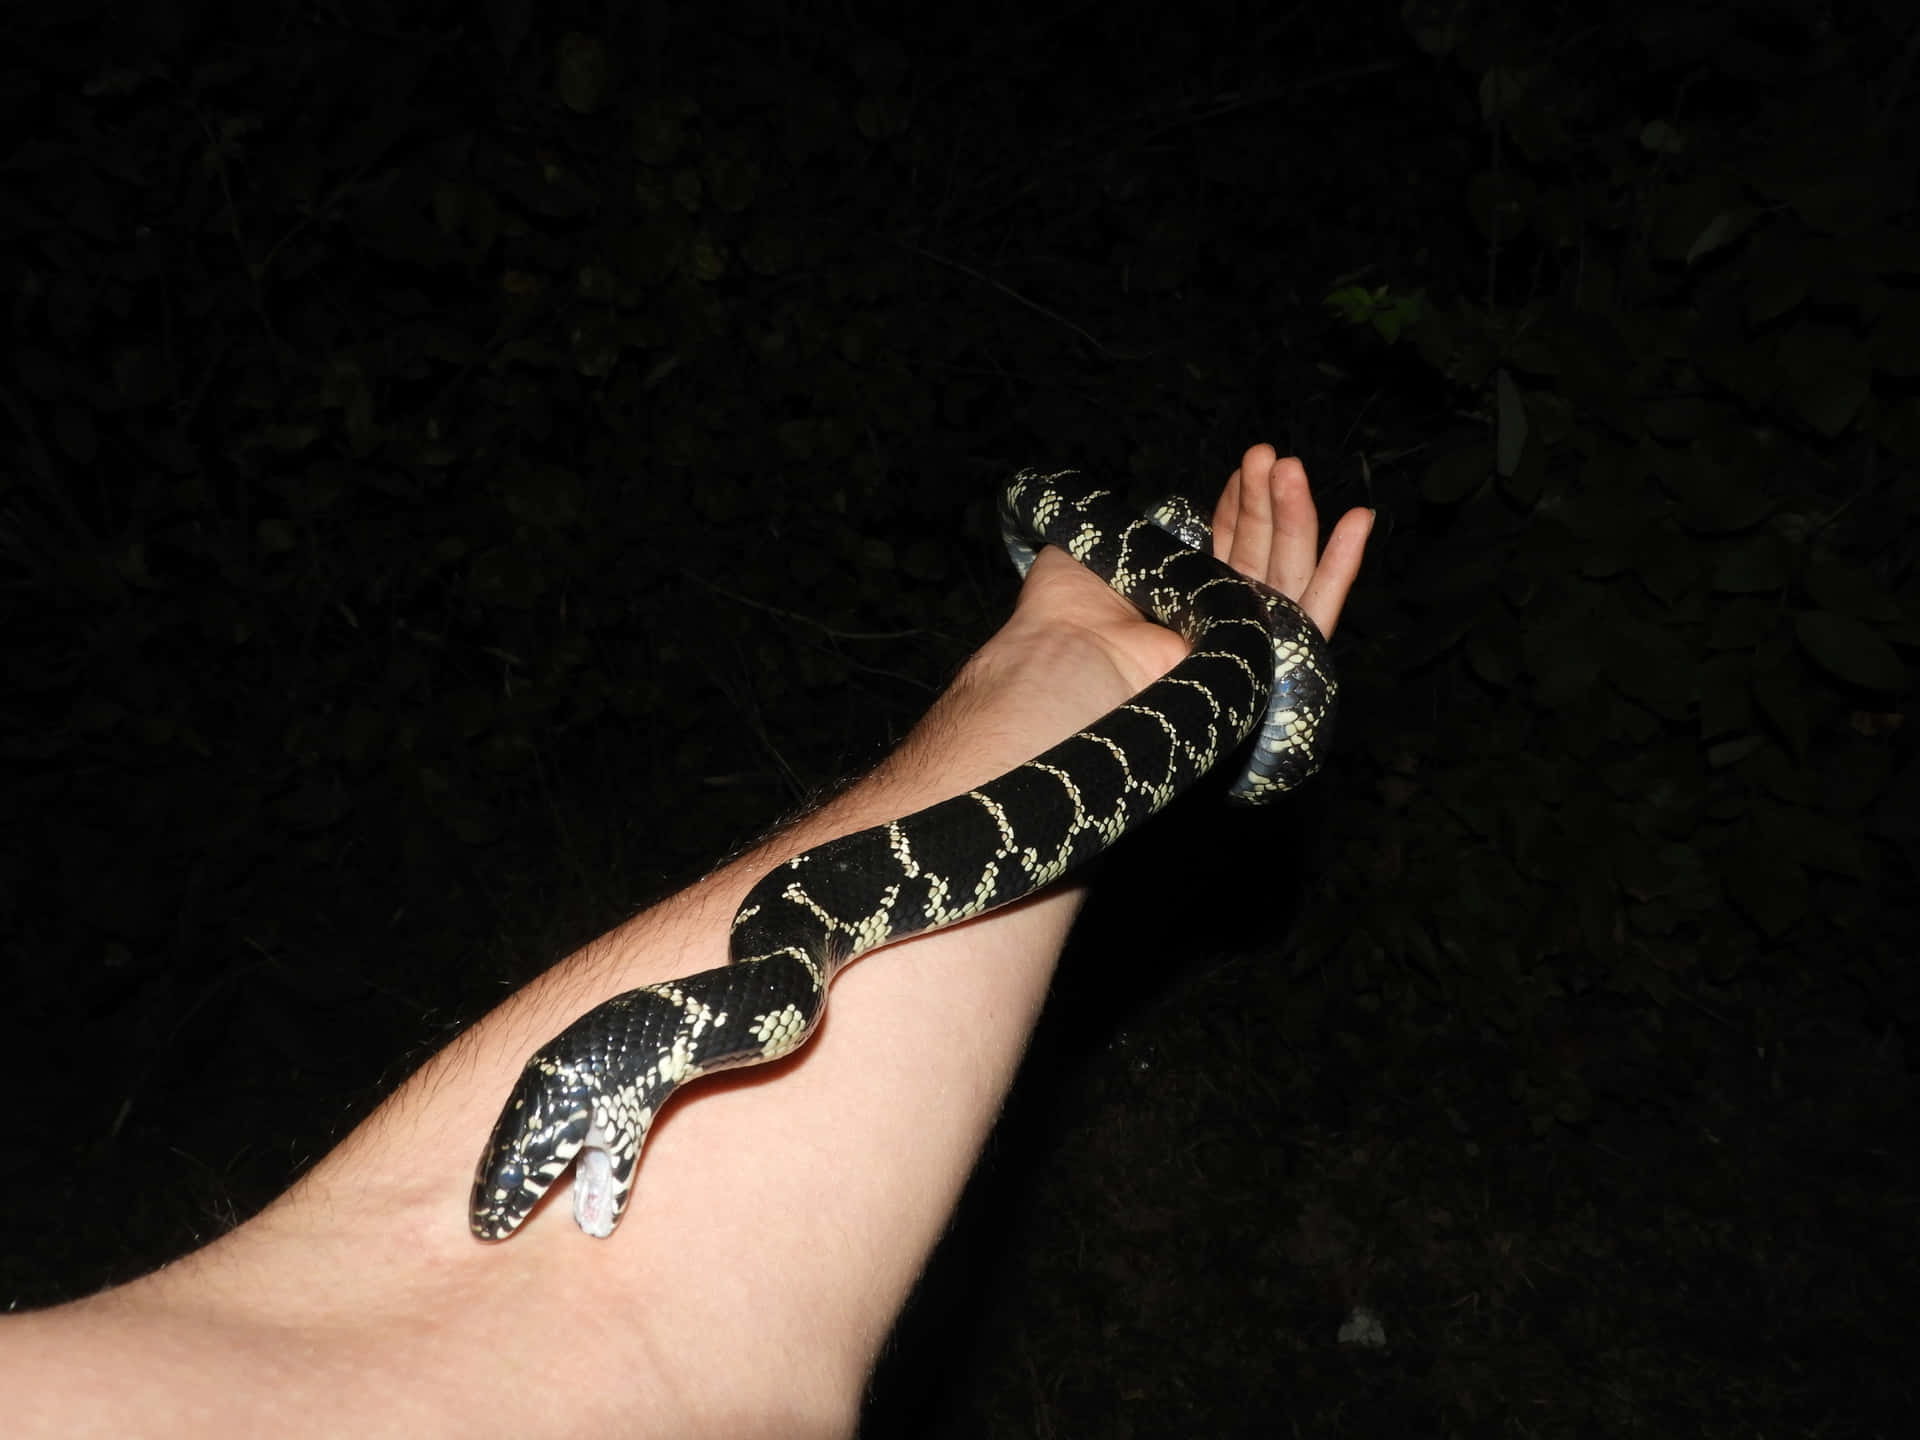 En sort og hvid slange er holdt i en persons hånd.